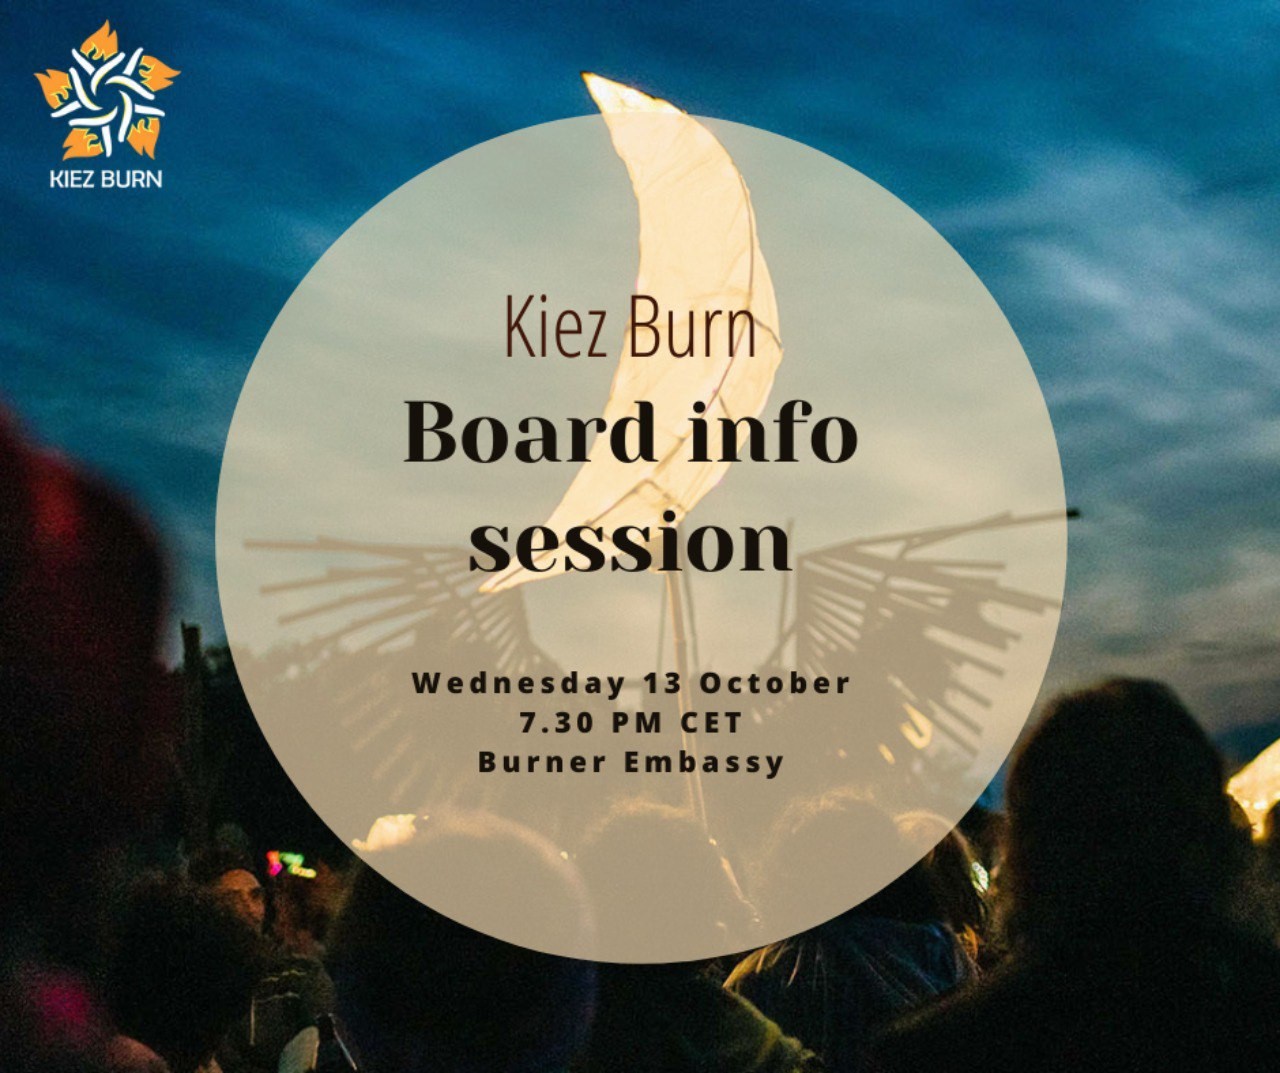 Board info session